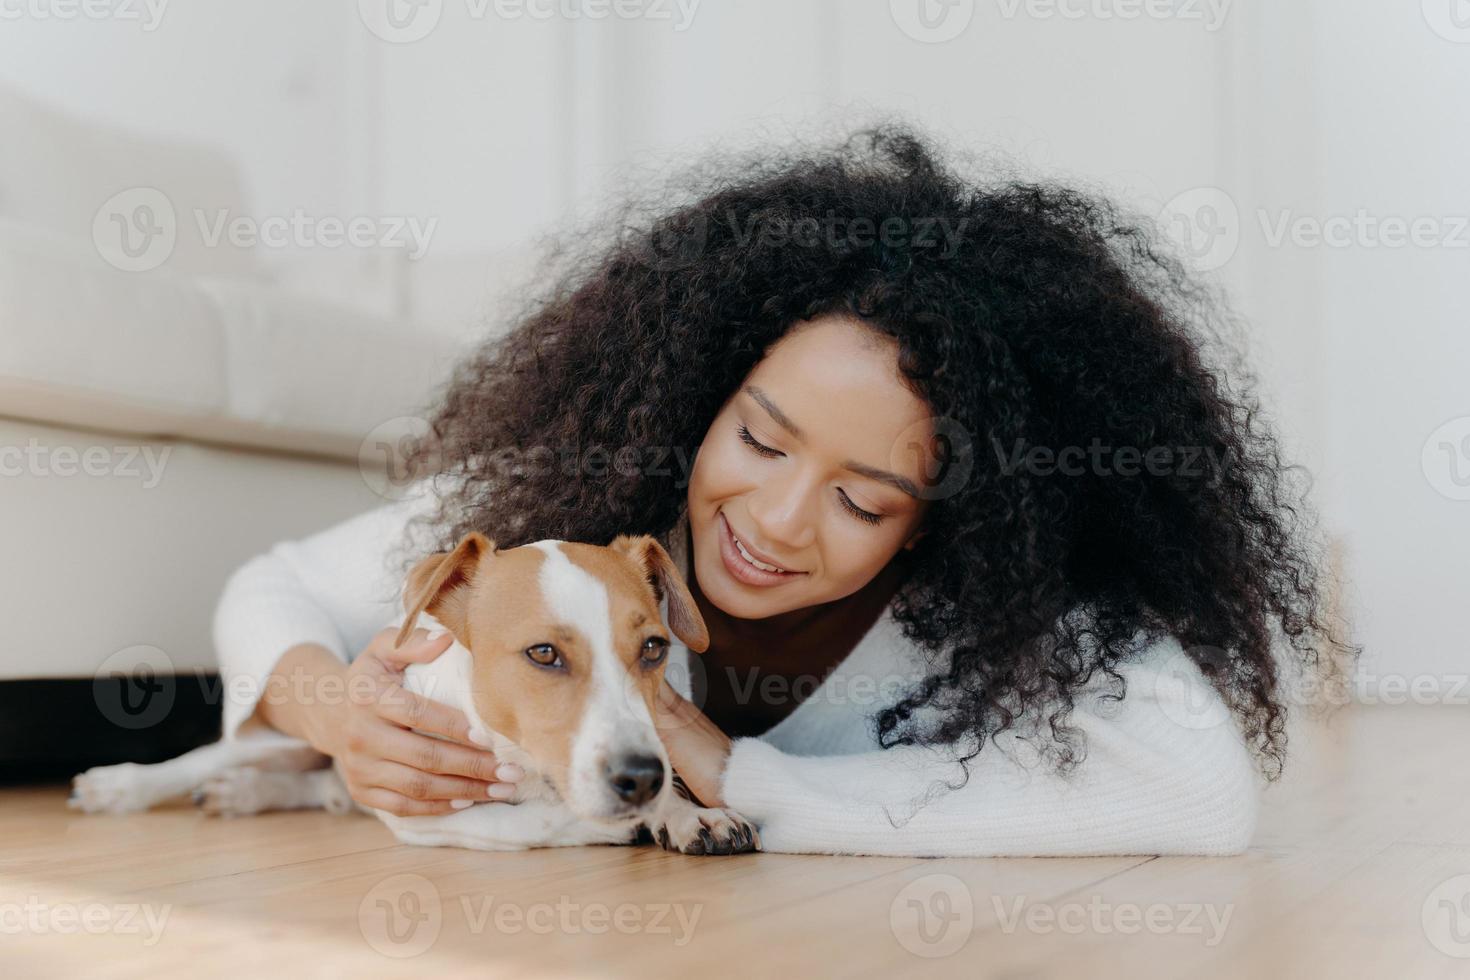 mulher afro relaxada com cabelo escuro crocante deita no chão, brinca com cachorrinho fofo, se diverte com jack russell terrier cachorro usa suéter branco na sala de estar. feliz proprietário acariciando lindo animal doméstico foto